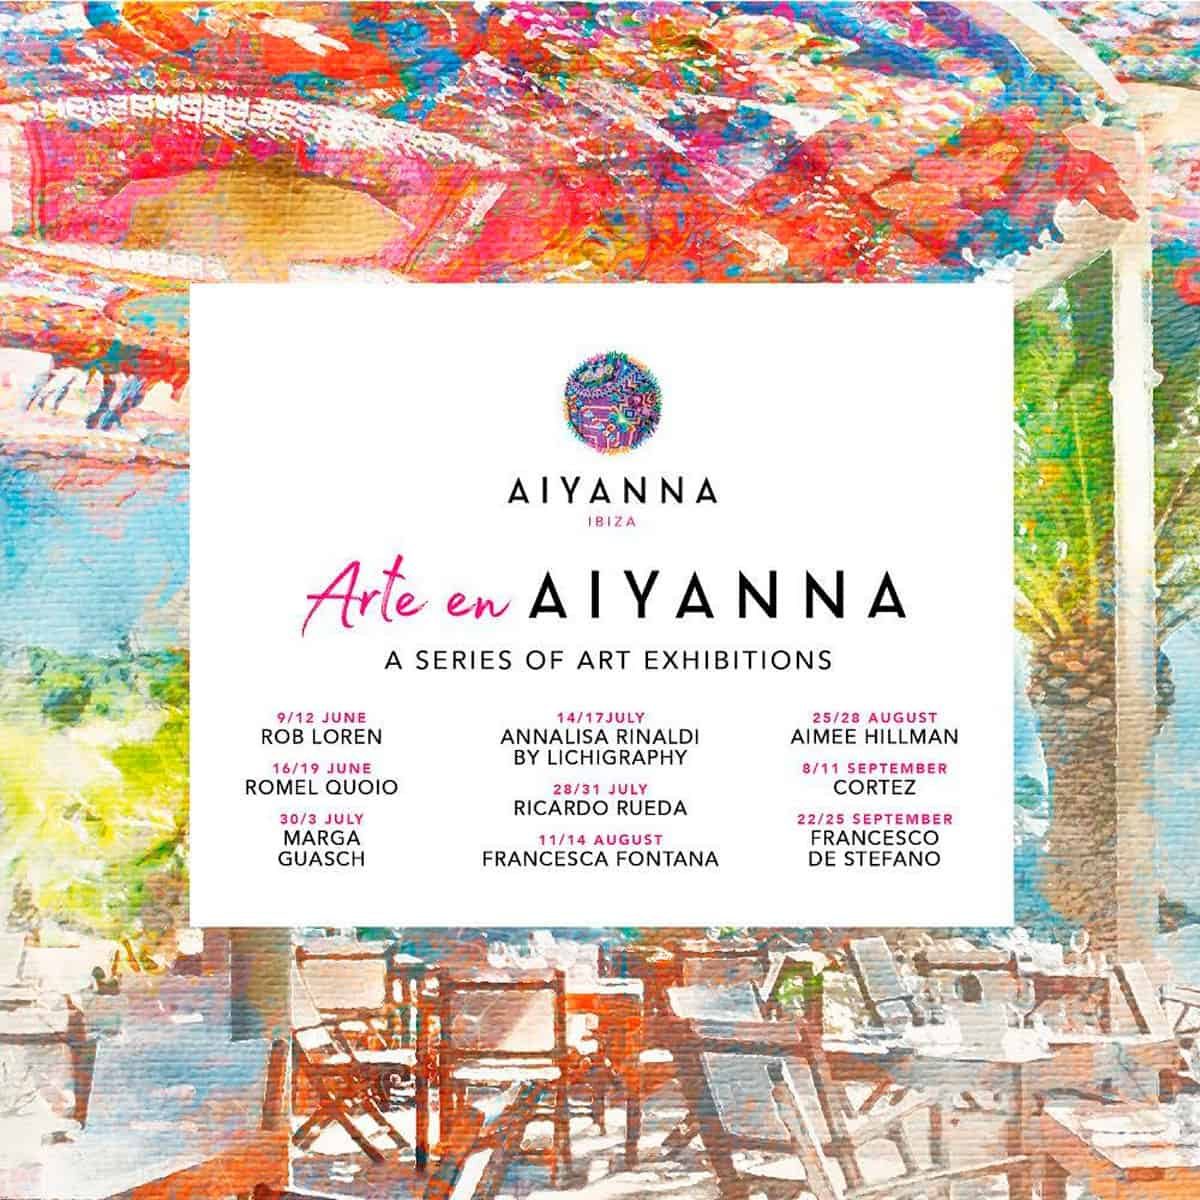 ausstellungen-kunst-aiyanna-ibiza-2021-welcometoibiza